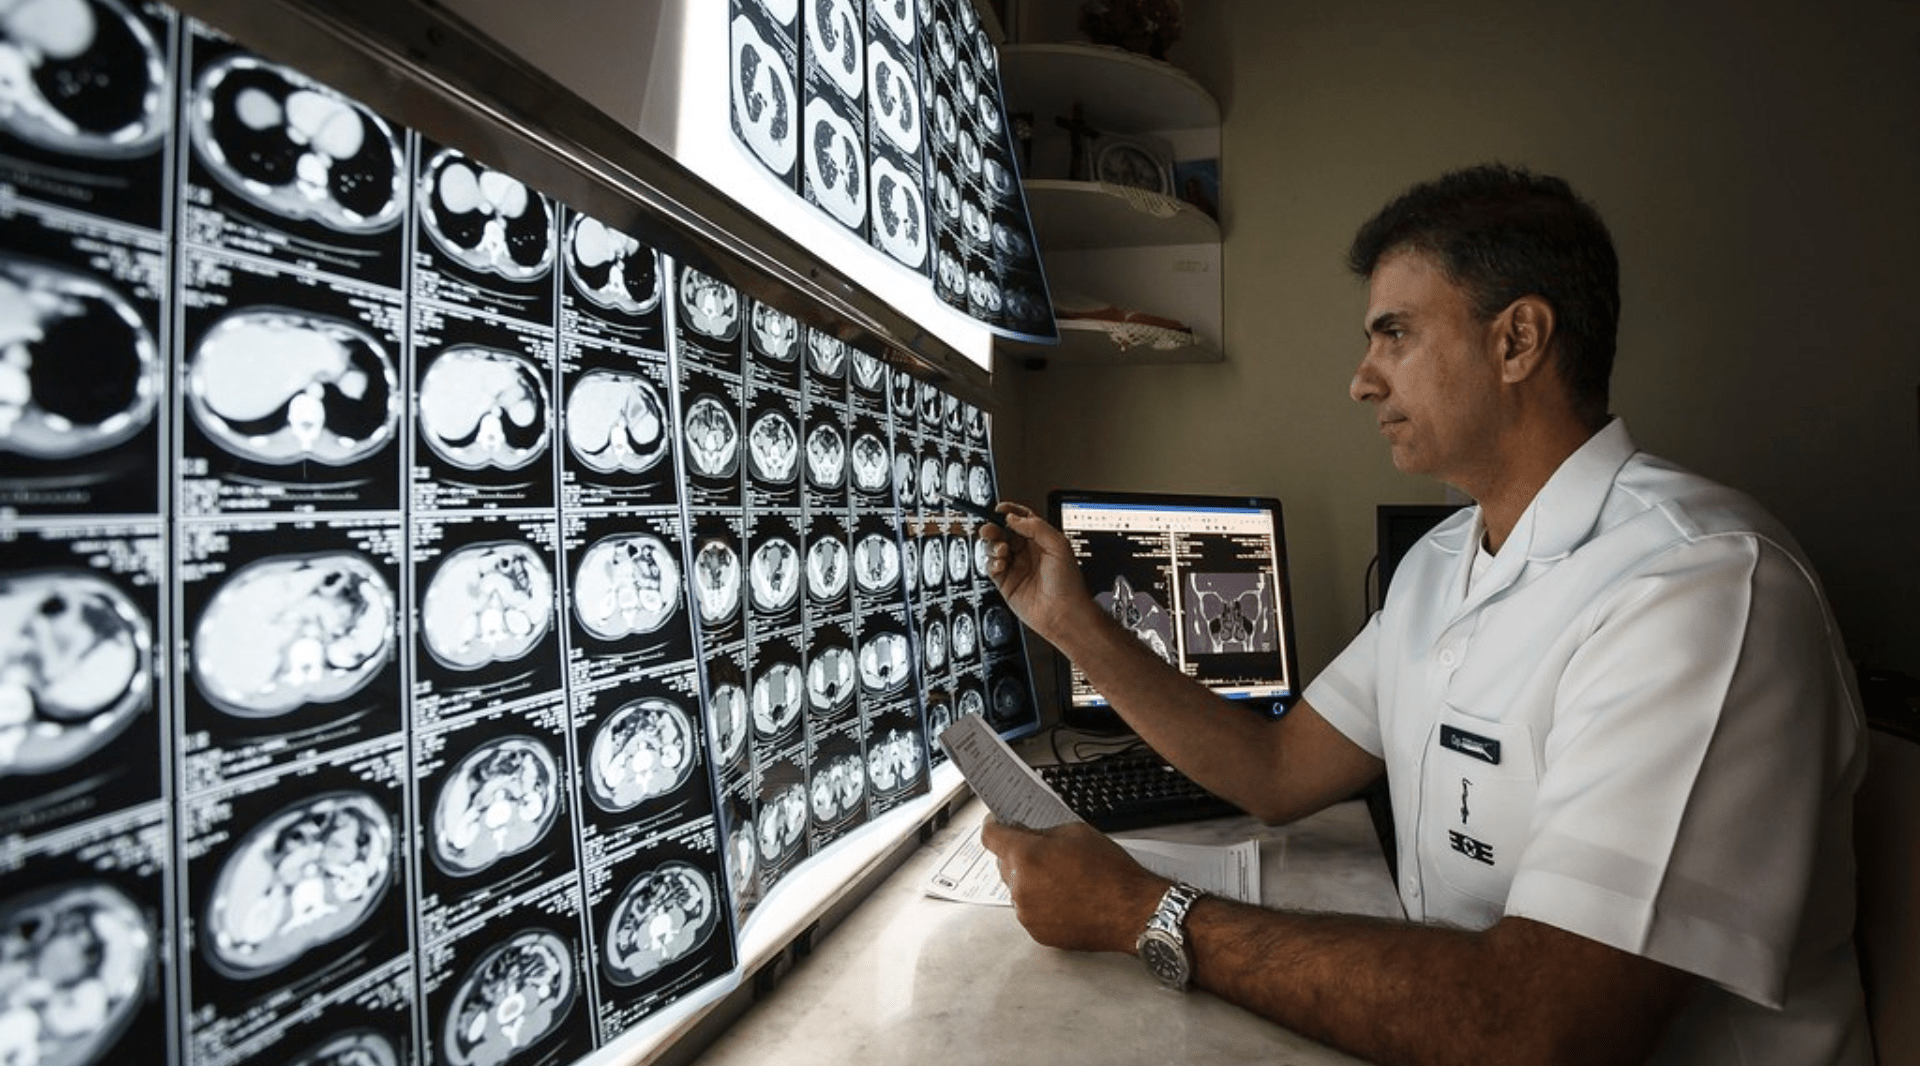 Entenda mais sobre a radiologia e a facilitação dos processos médicos